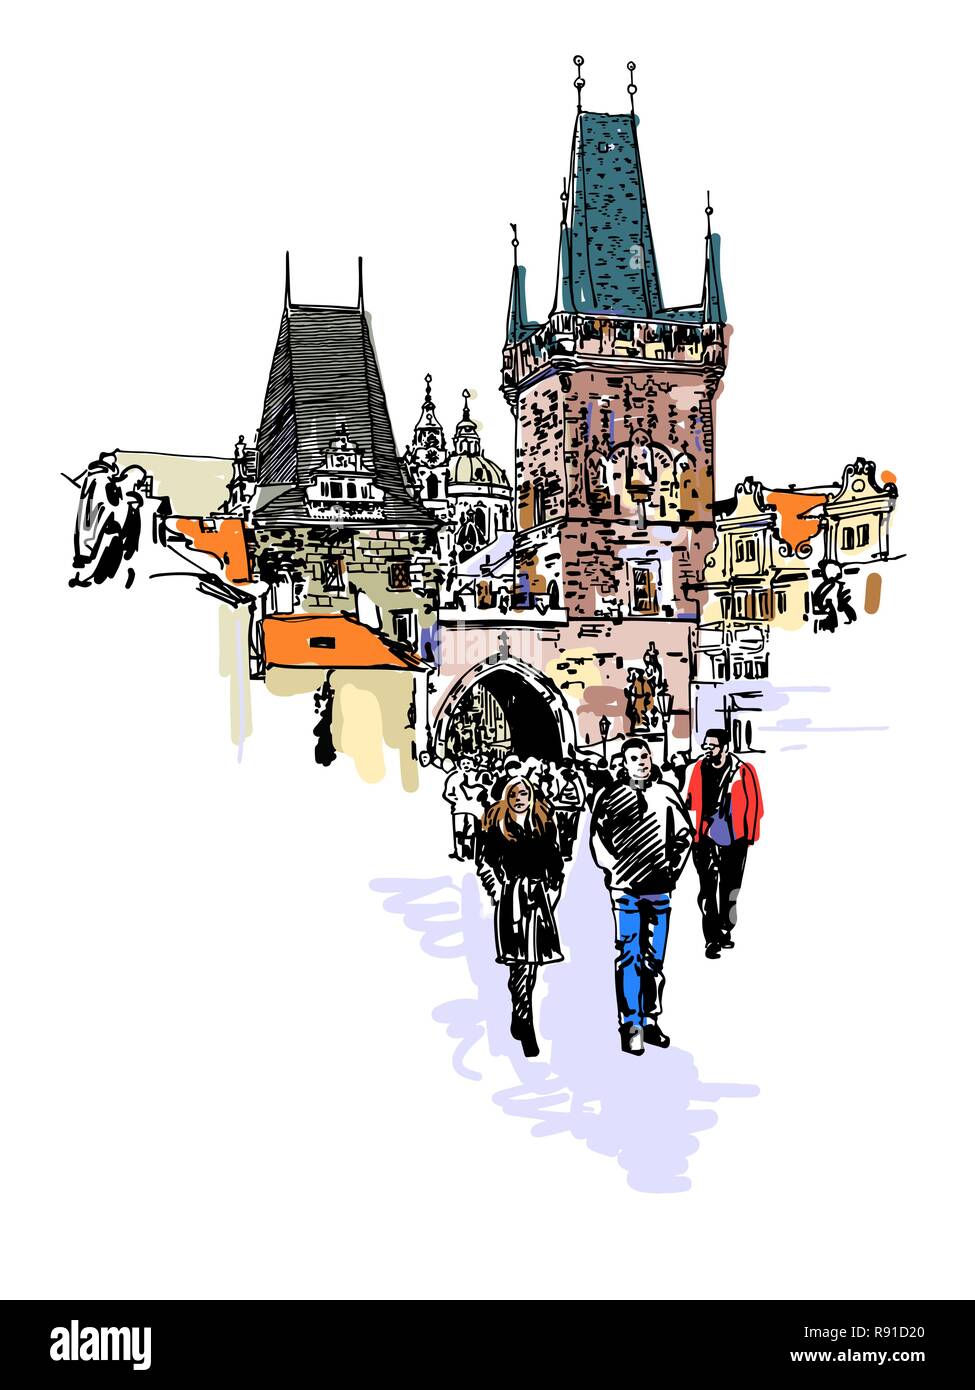 Ein Blick auf den Turm der Karlsbrücke in Prag Zeichnung Stock Vektor